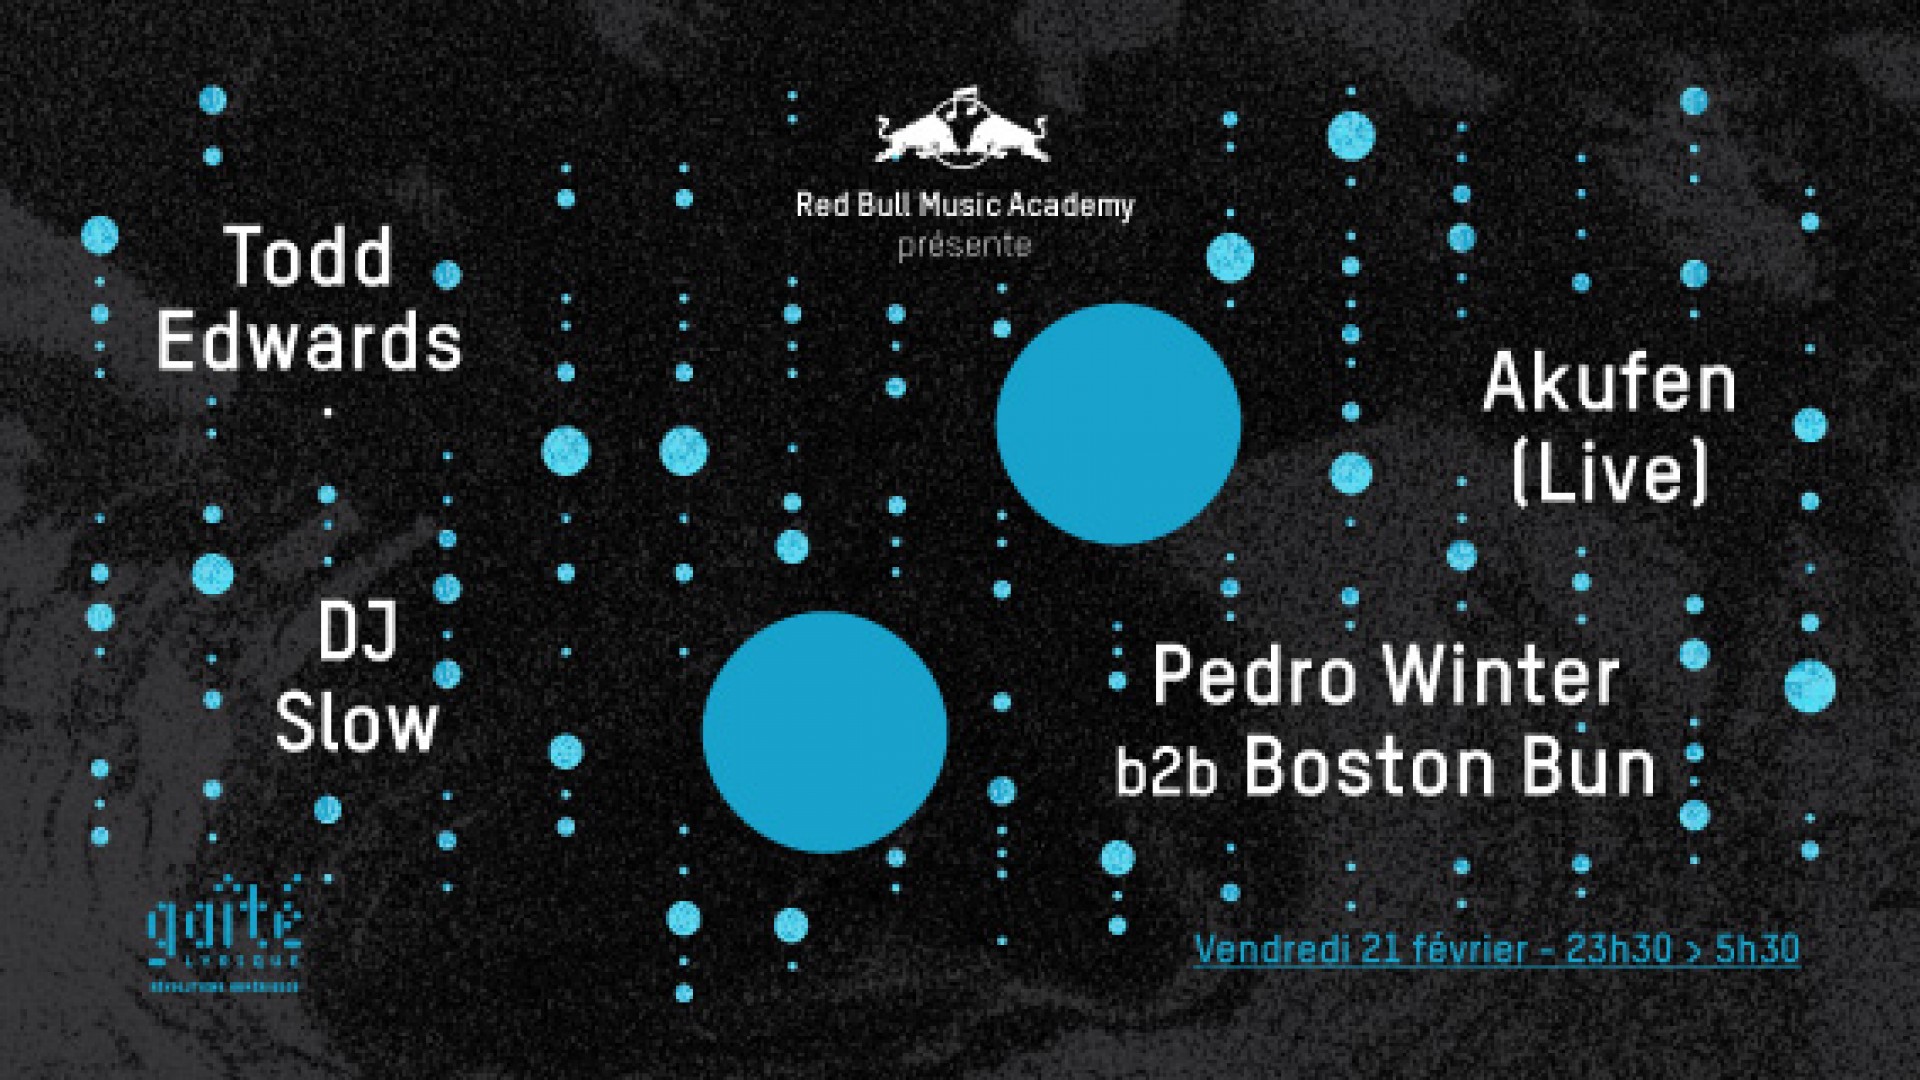 Todd Edwards + Pedro Winter b2b Boston Bun + Akufen + DJ Slow